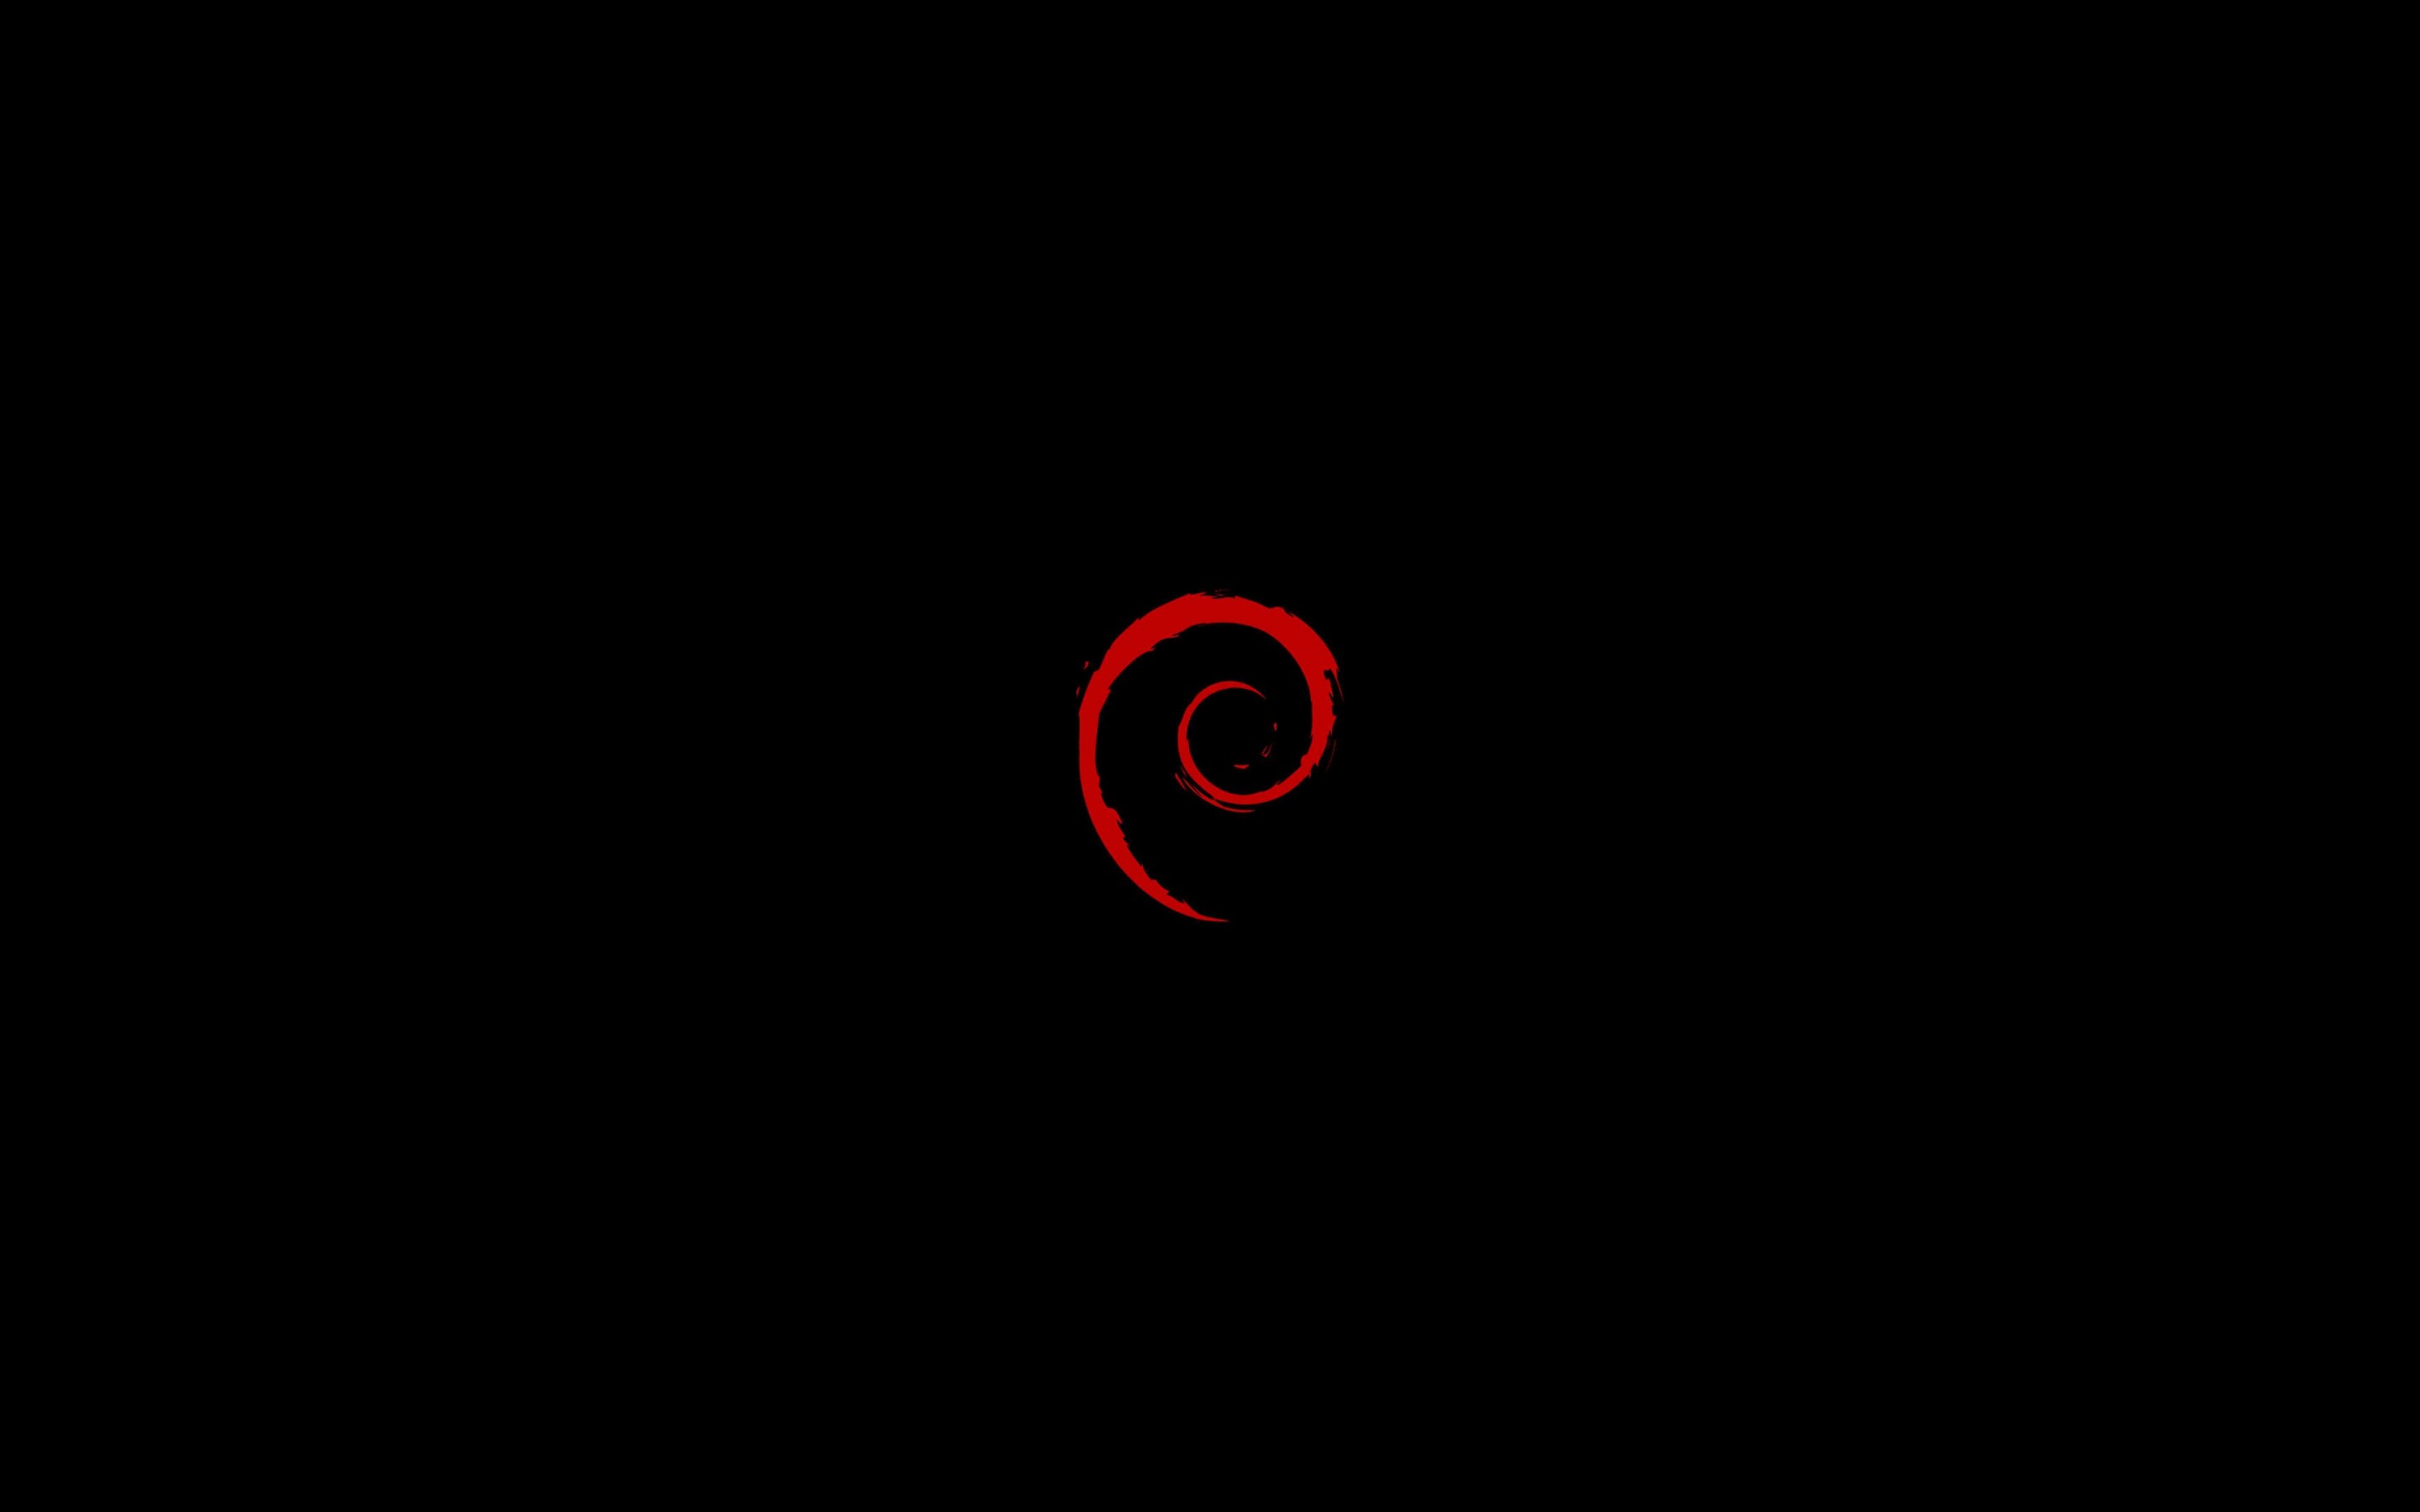 Linux Debian Wallpaper for Desktop 2880x1800